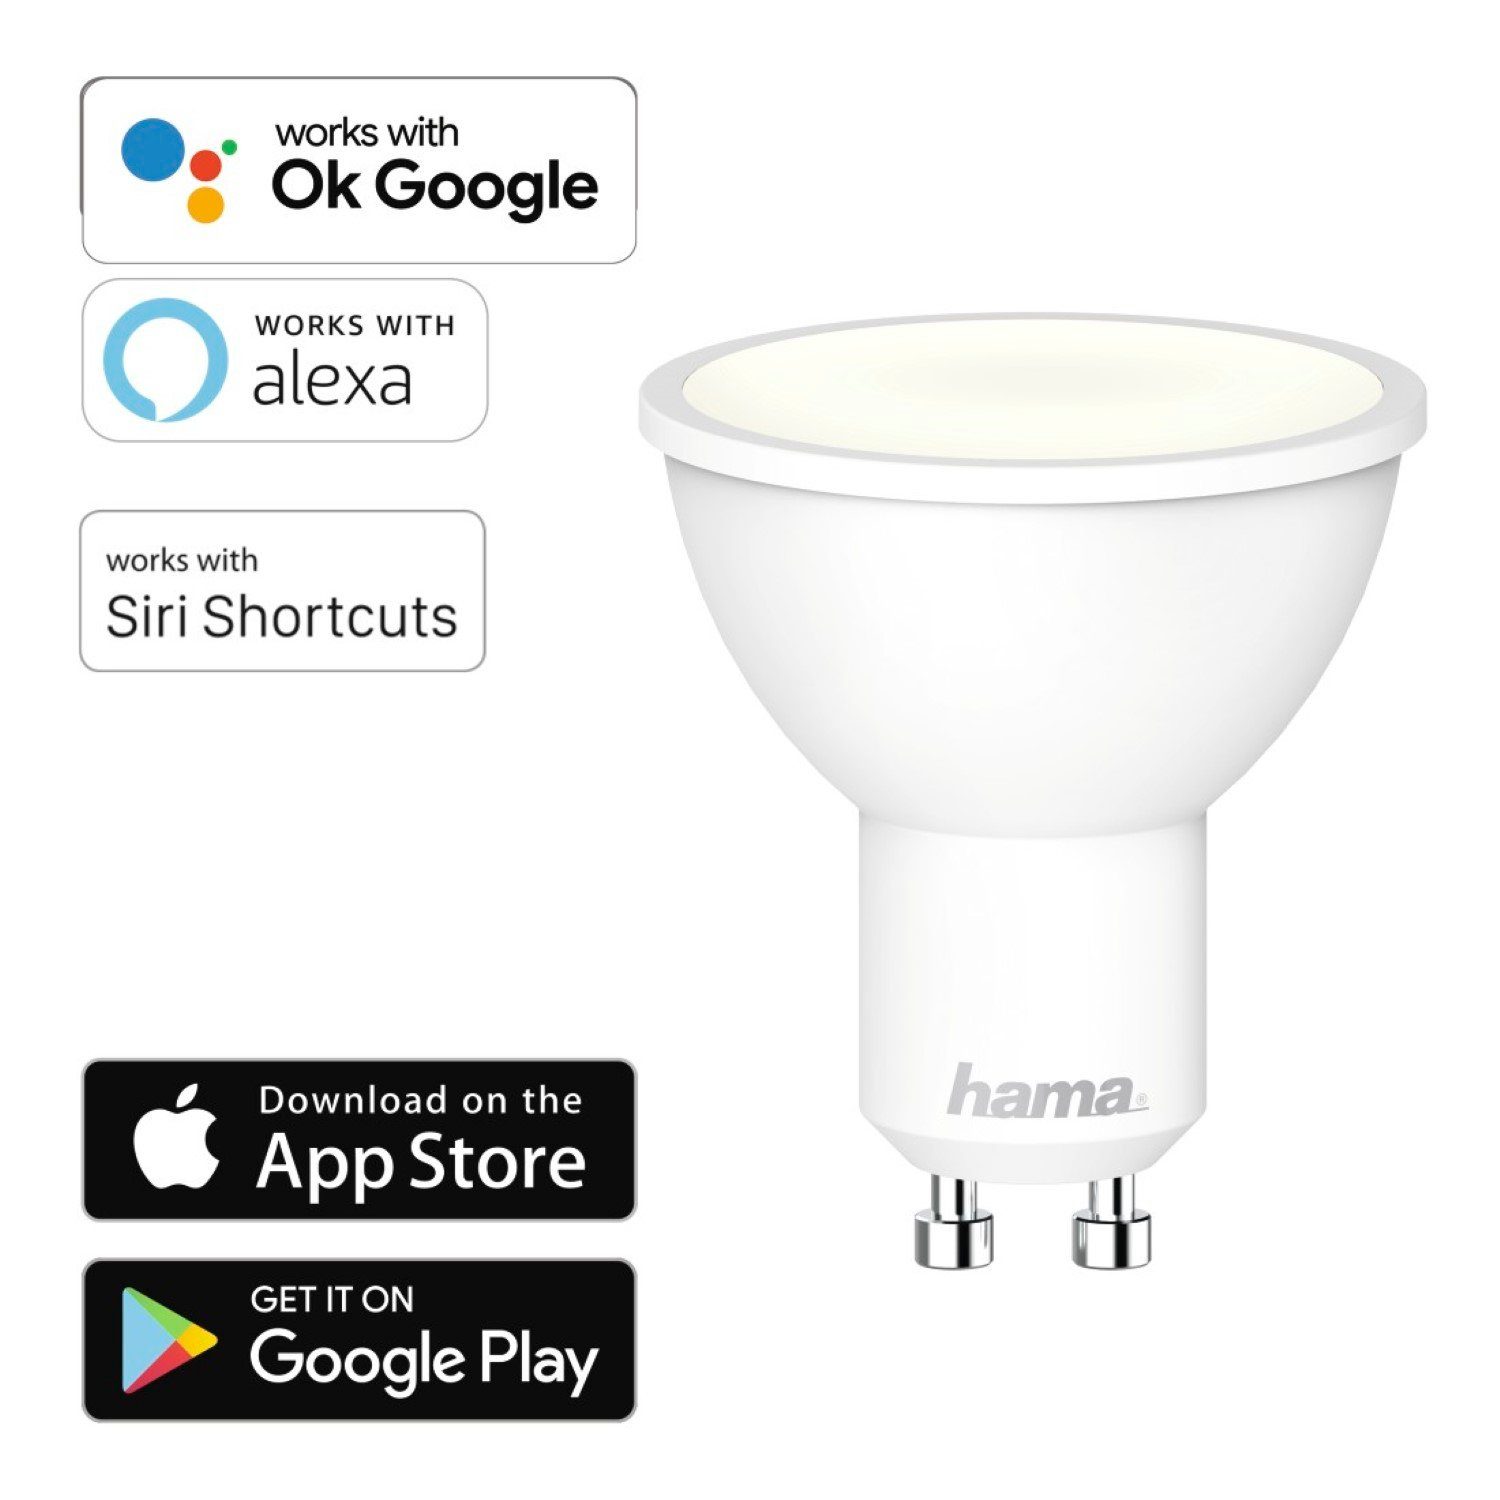 Hama Hängeleuchten »WLAN LED-Lampe GU10 5,5W 40W Birne Dimmbar«, WiFi  Verbindung, 5,5W = 40W, Smart Home, App-Steuerung auch Sprachsteuerung  passend für Amazon Alexa und OK Google Assistent online kaufen | OTTO